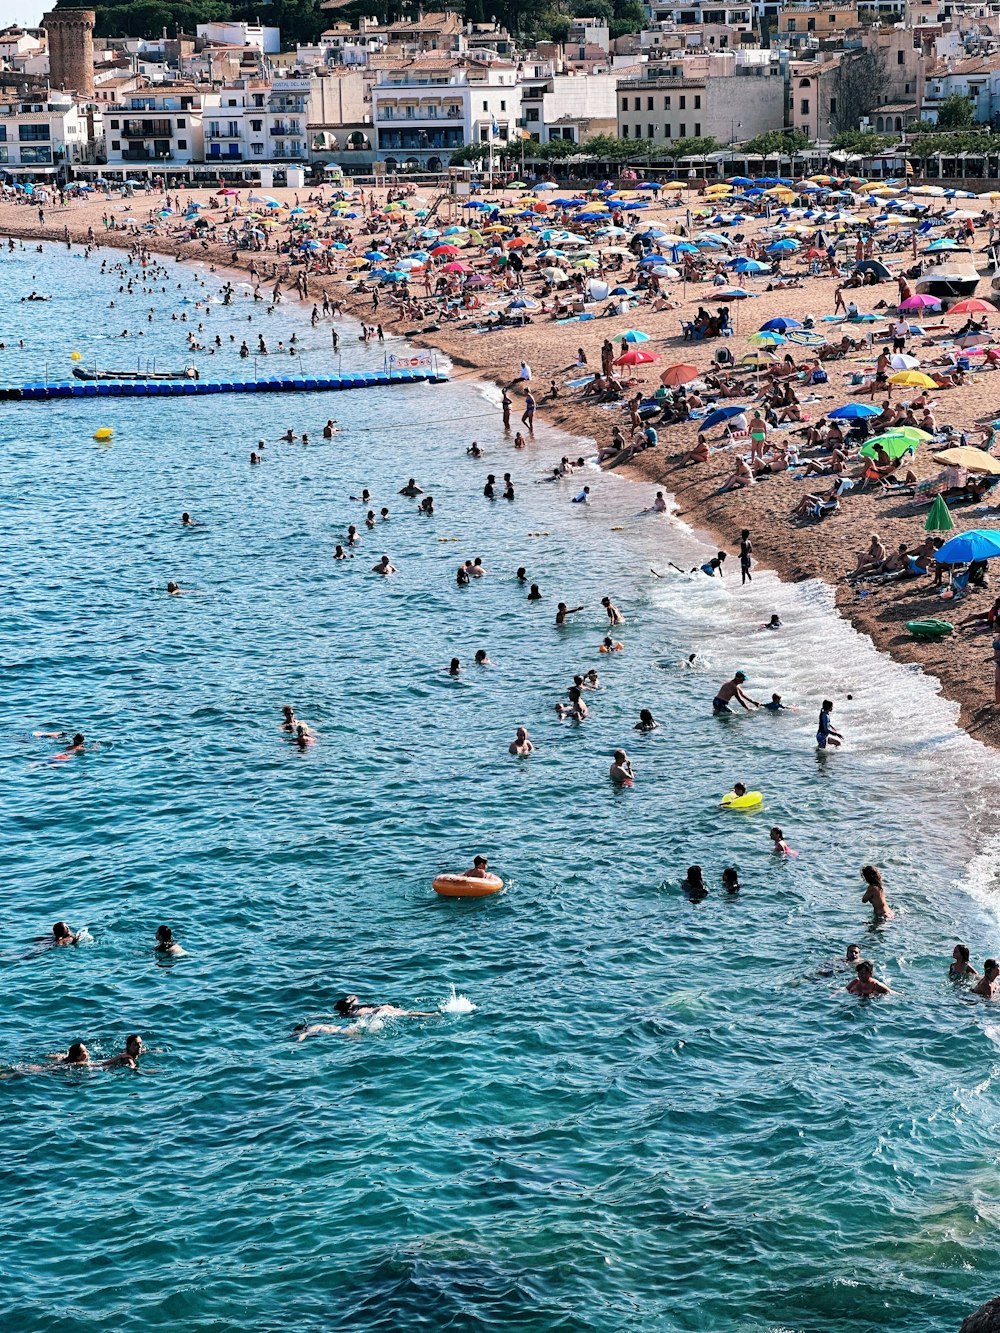 Una playa llena de gente nadando en el agua